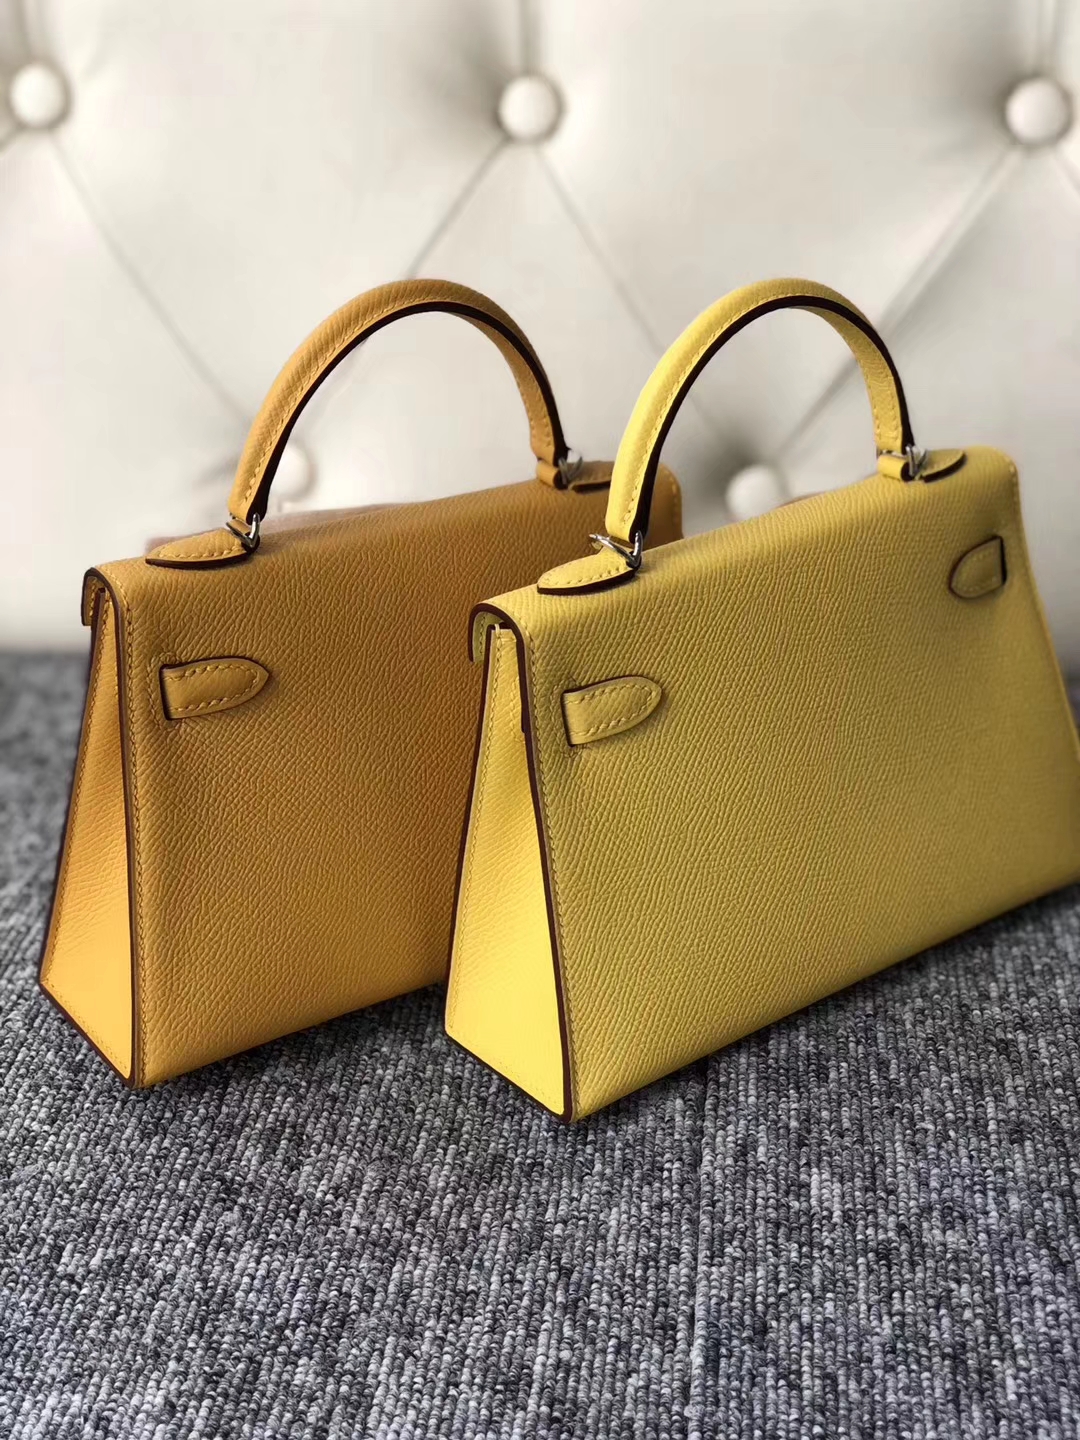 Fashion Hermes 9D Ambre VS 9O Jaune de Naples Epsom Calf Minikelly-2 Clutch Bag